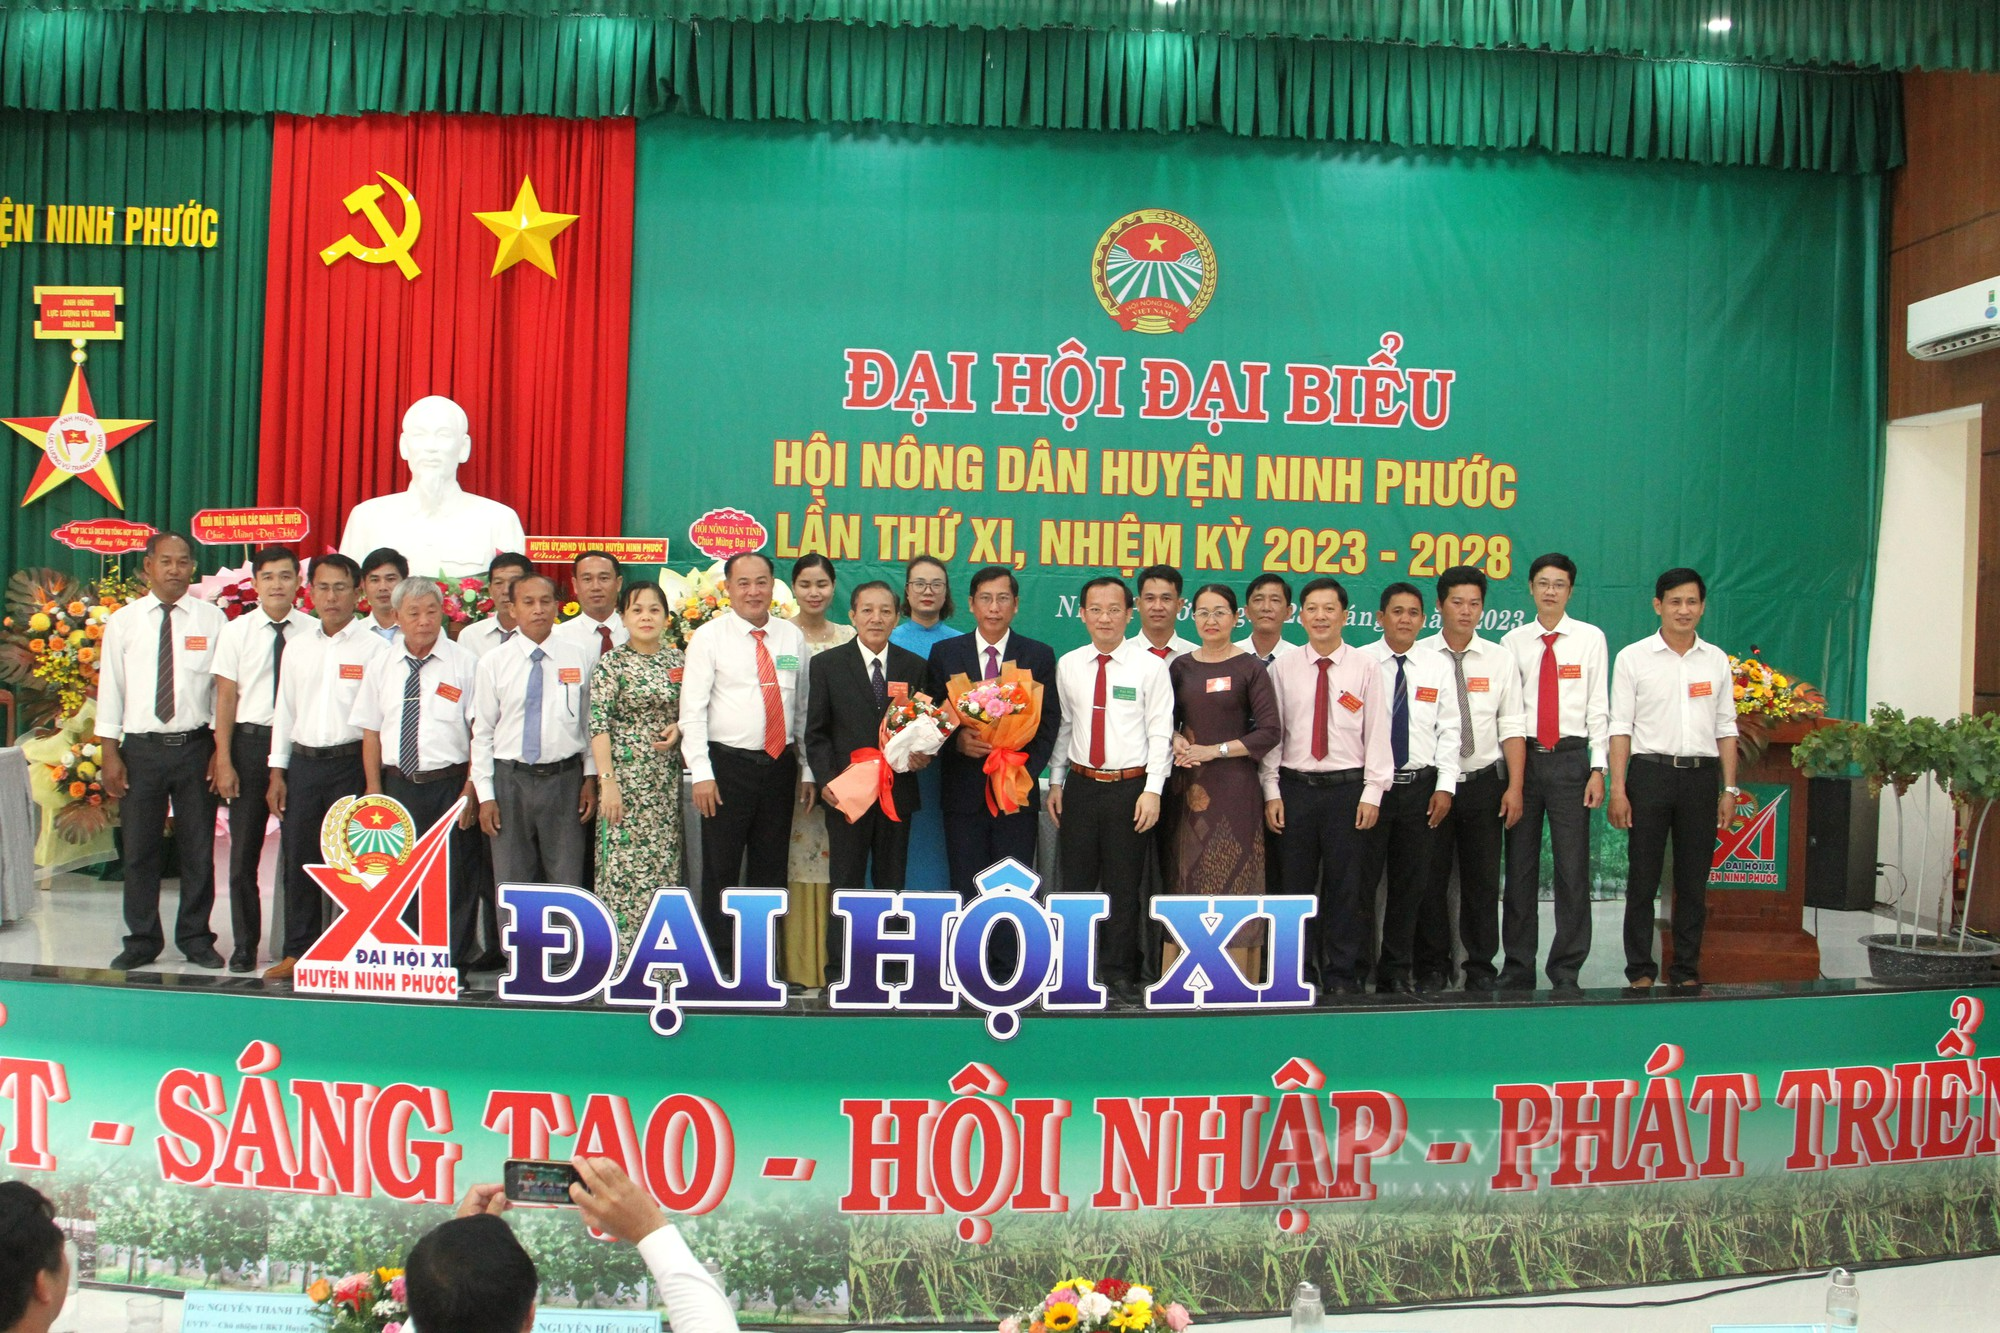 Ông Phạm Văn Thể được bầu làm Chủ tịch Hội Nông dân huyện Ninh Phước, tỉnh Ninh Thuận - Ảnh 8.